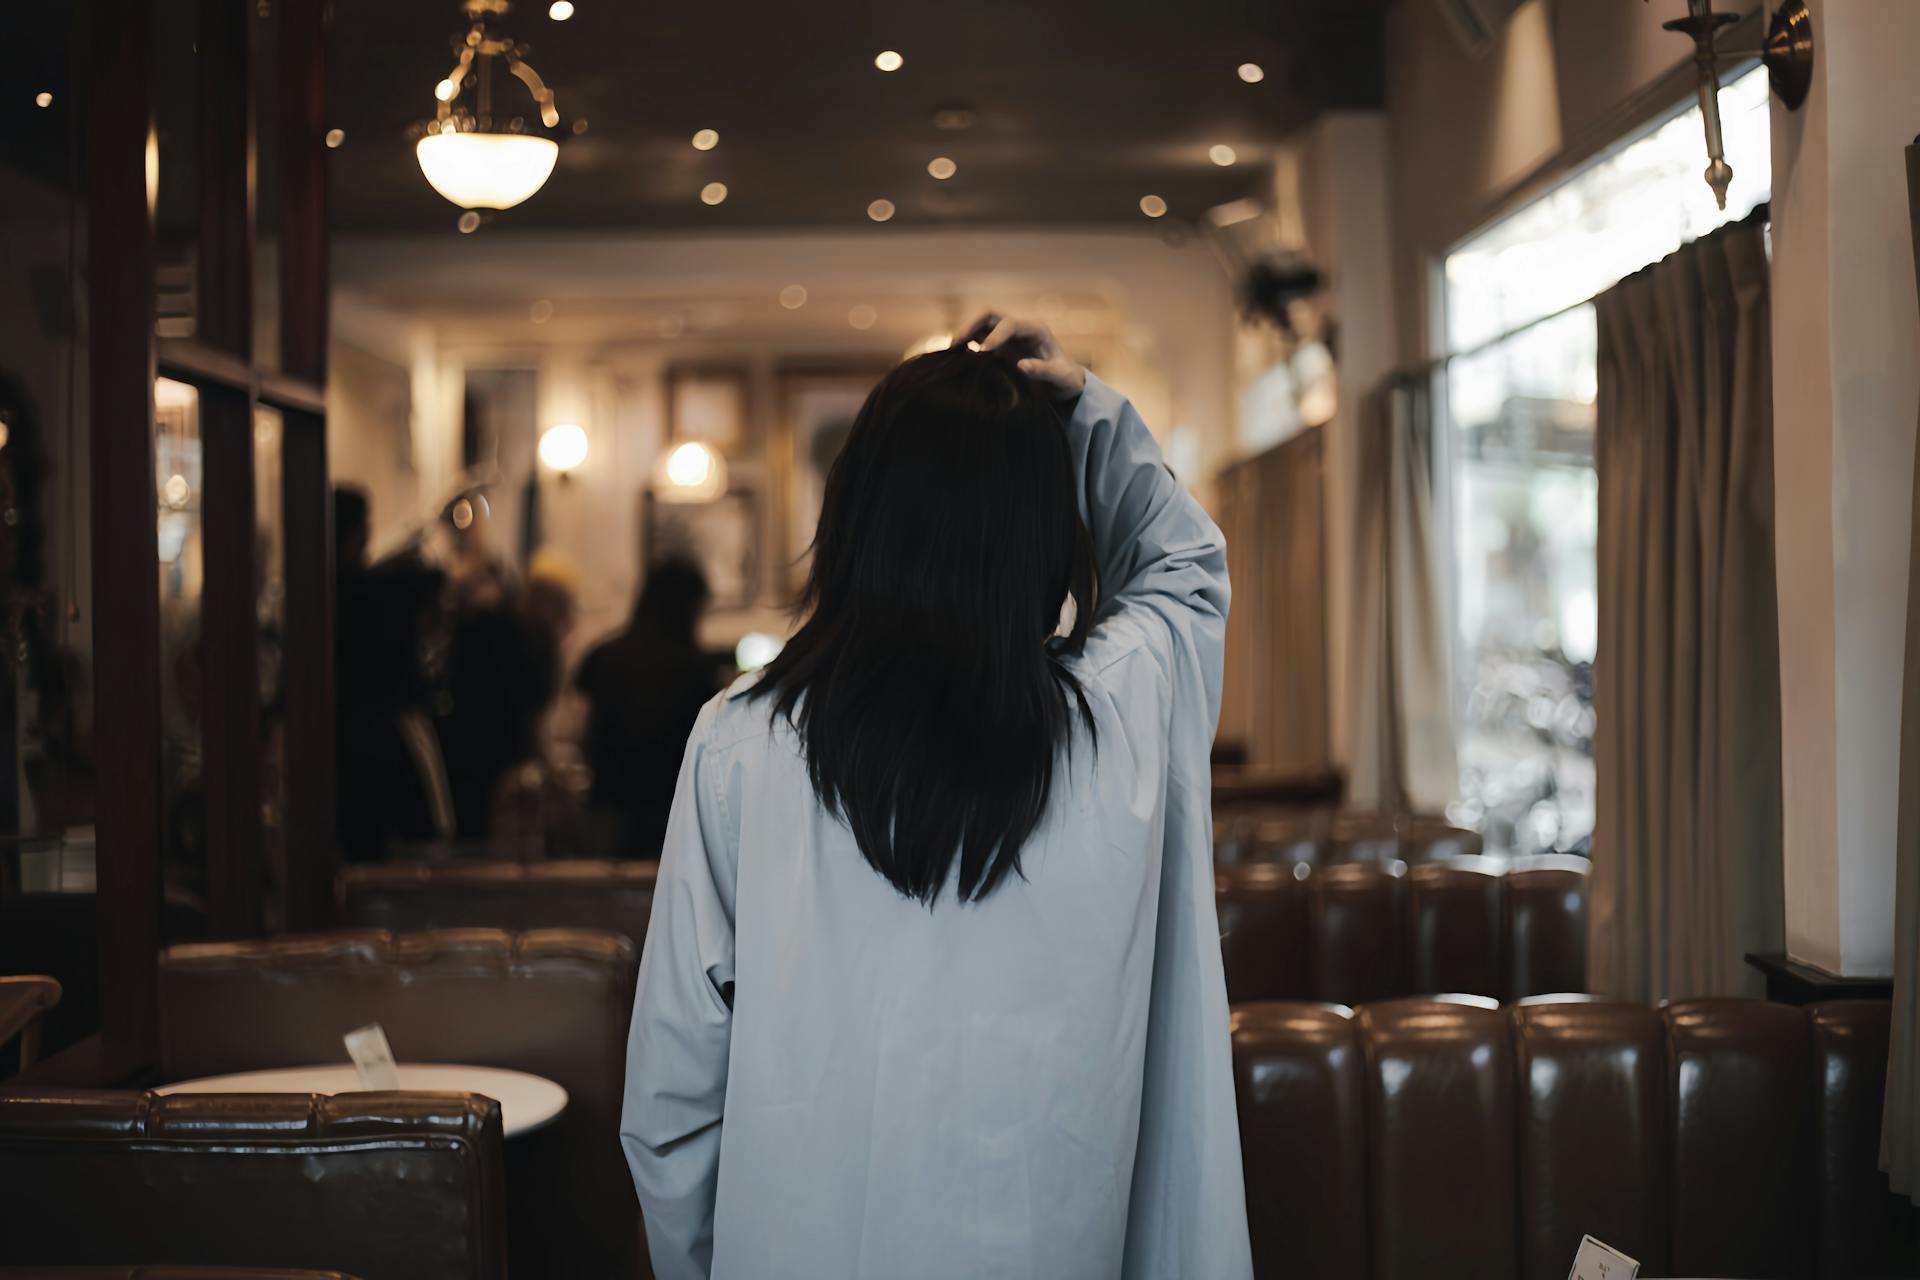 Vue de dos d'une femme marchant dans un restaurant | Source : Pexels